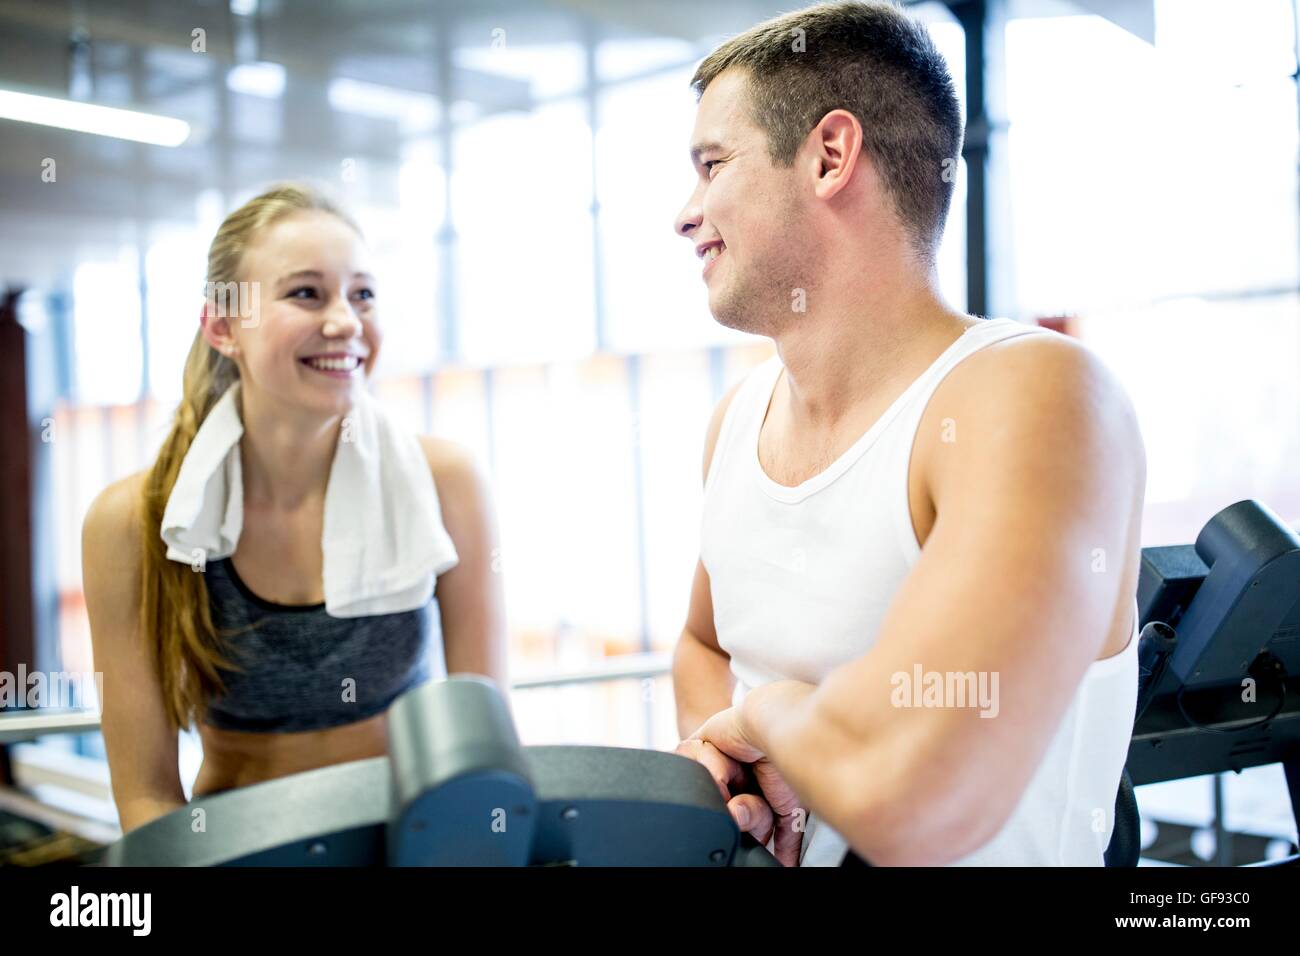 EIGENTUM FREIGEGEBEN. -MODELL VERÖFFENTLICHT. Junger Mann und Frau miteinander zu reden, während der Arbeit im Fitness-Studio, lächelnd. Stockfoto